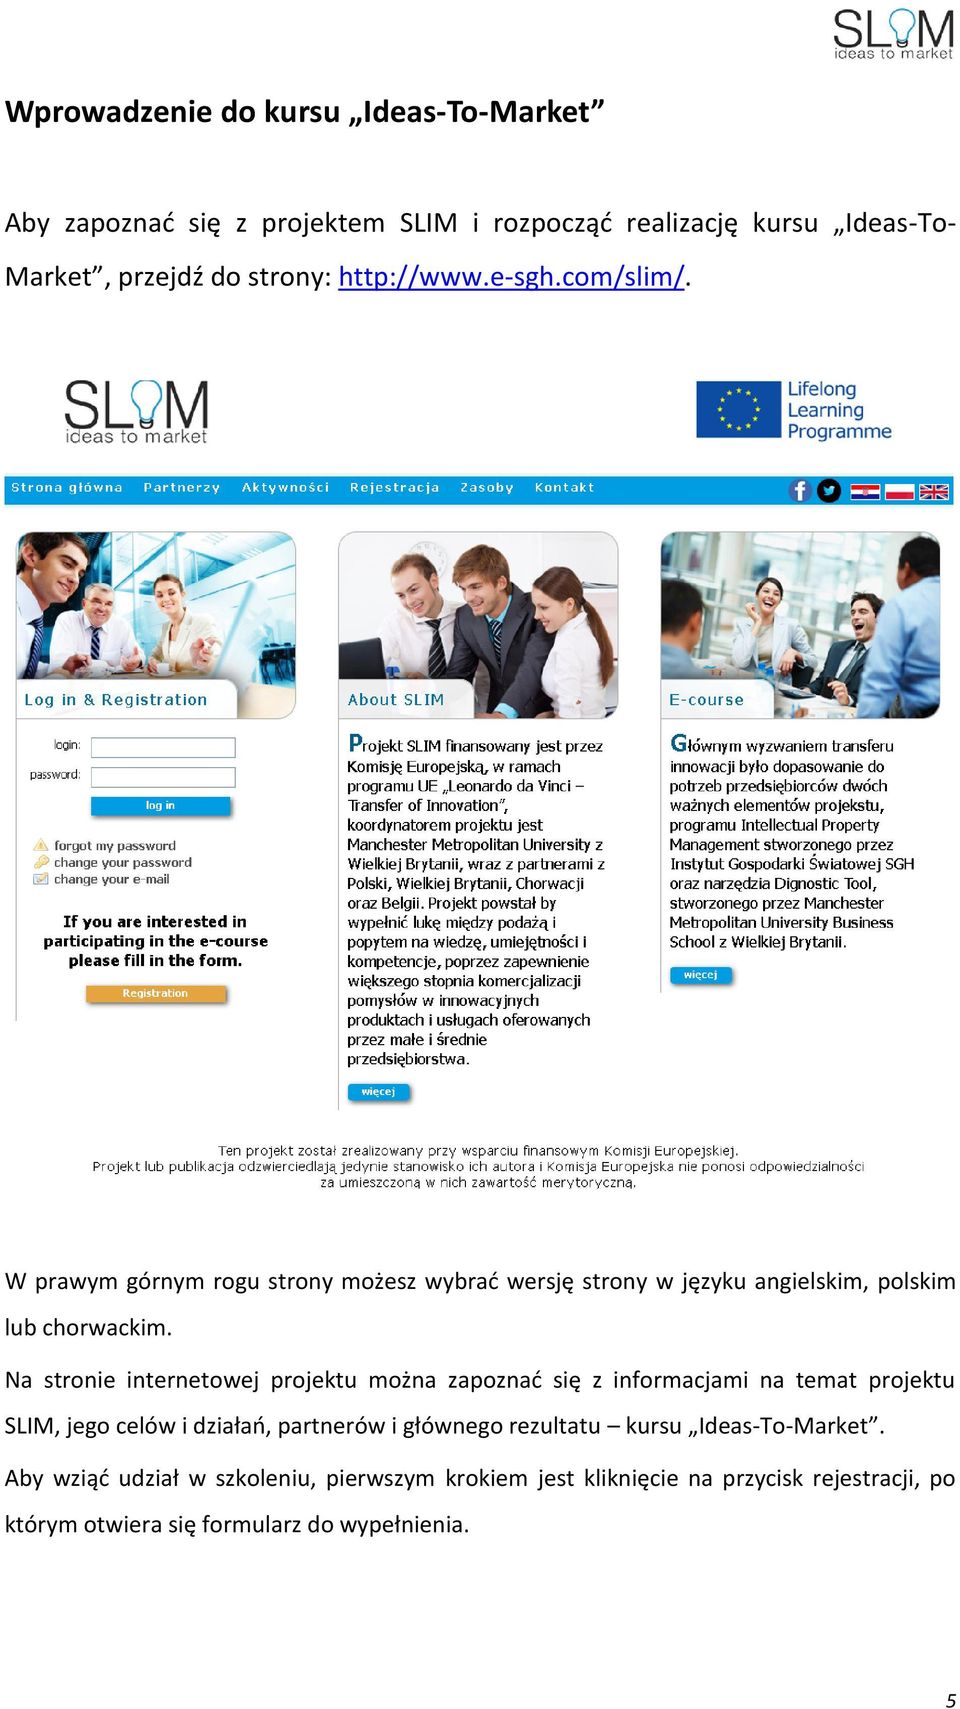 Na stronie internetowej projektu można zapoznać się z informacjami na temat projektu SLIM, jego celów i działań, partnerów i głównego